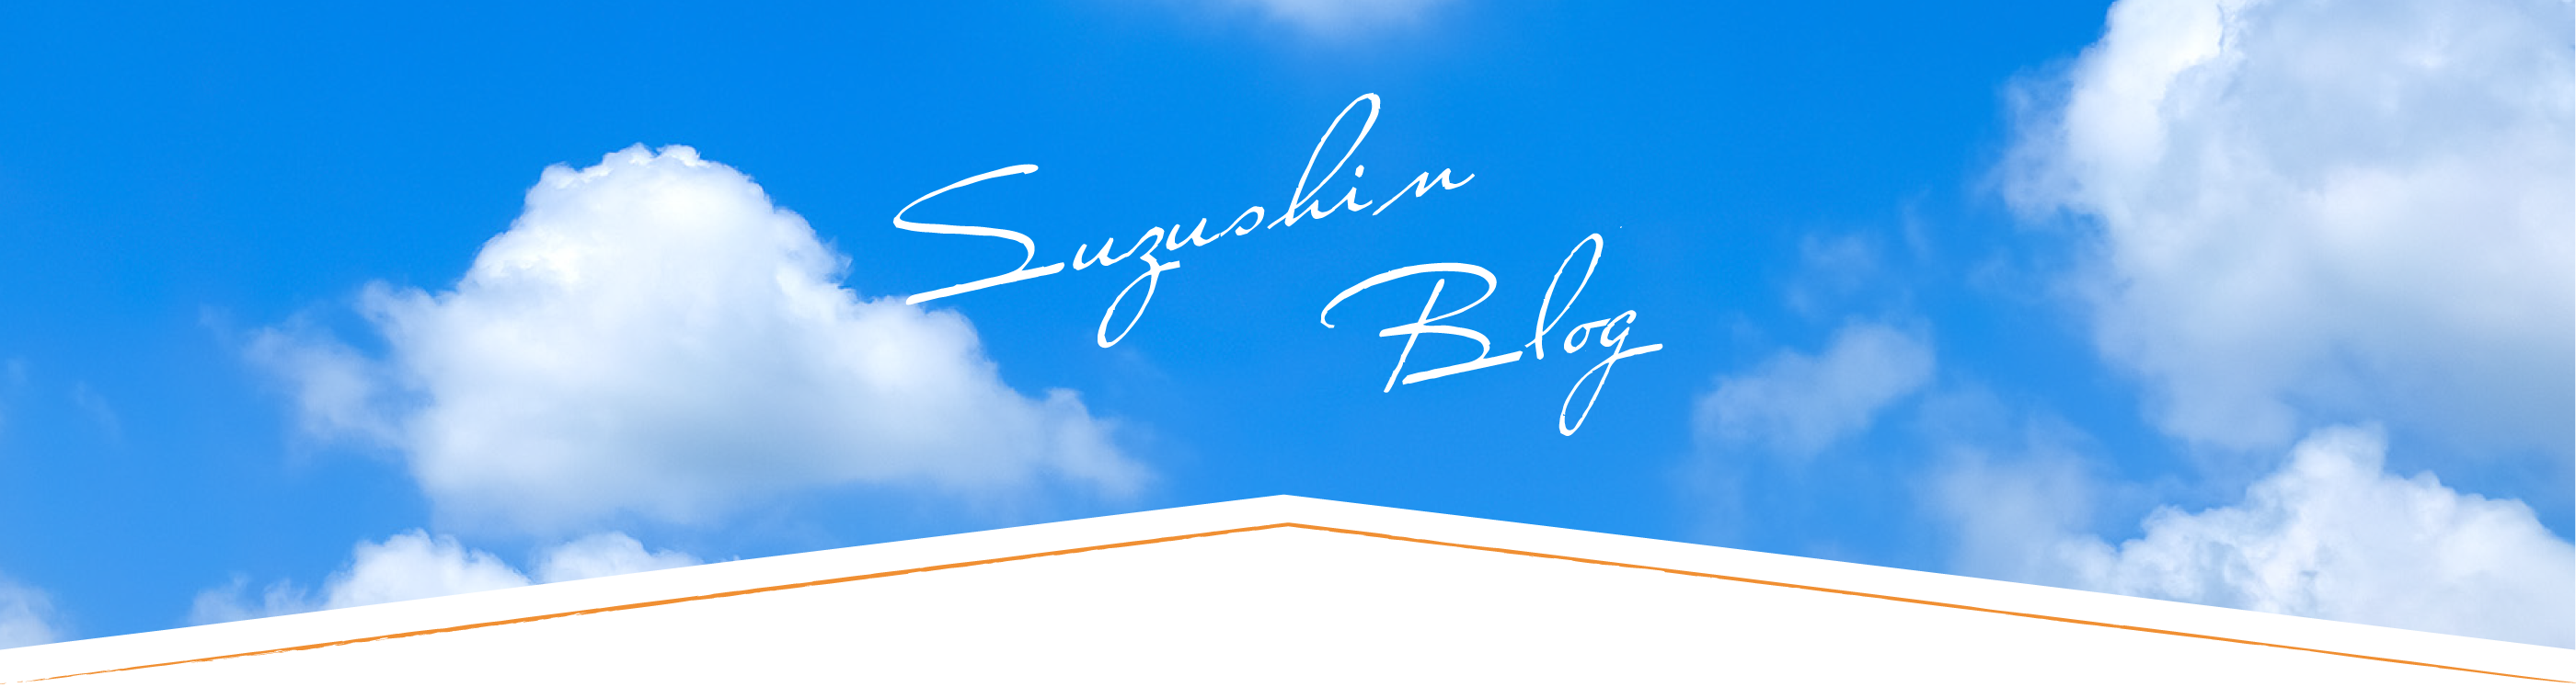 Suzushin Blog us